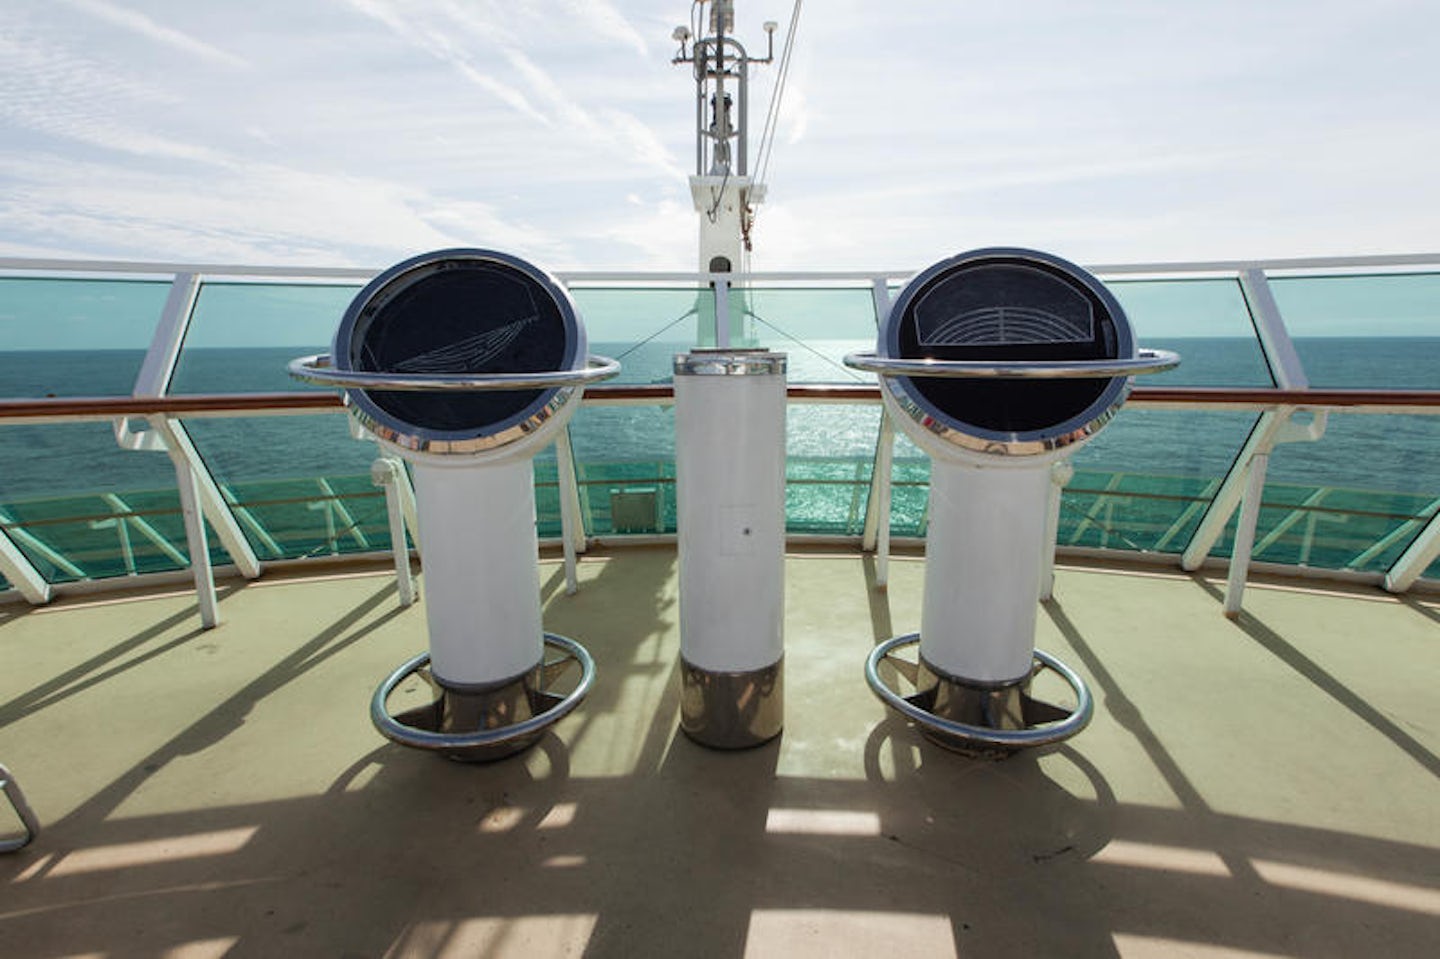 Observatory on Grandeur of the Seas